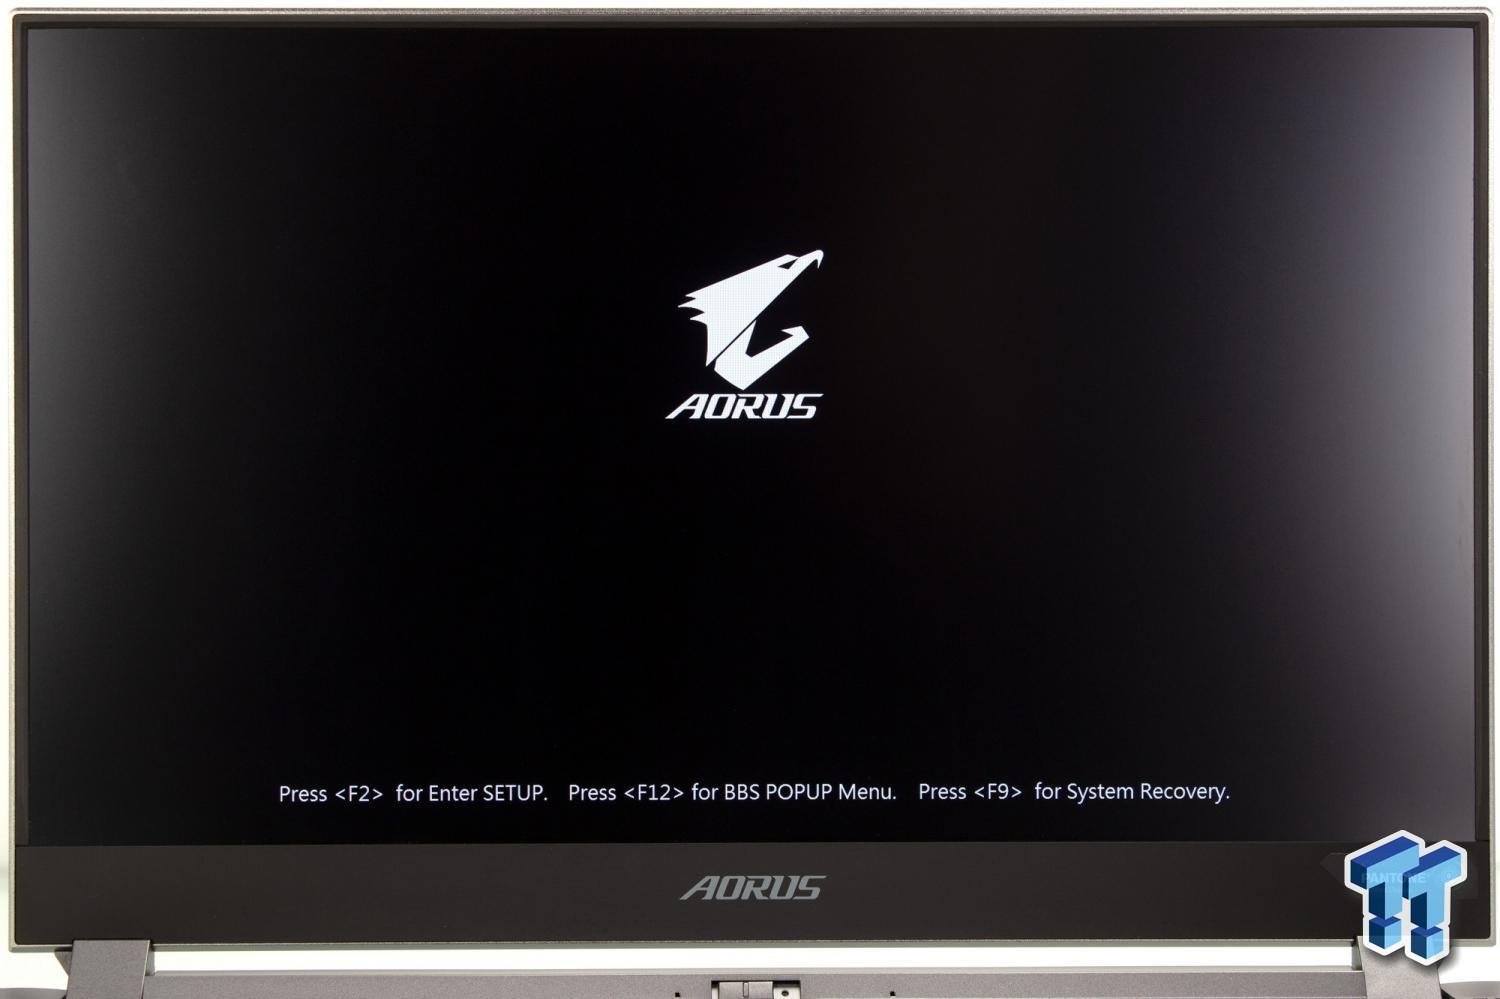 GIGABYTE AORUS 15P (Comet Lake) Gaming Laptop Deep Dive 59 | TweakTown.com